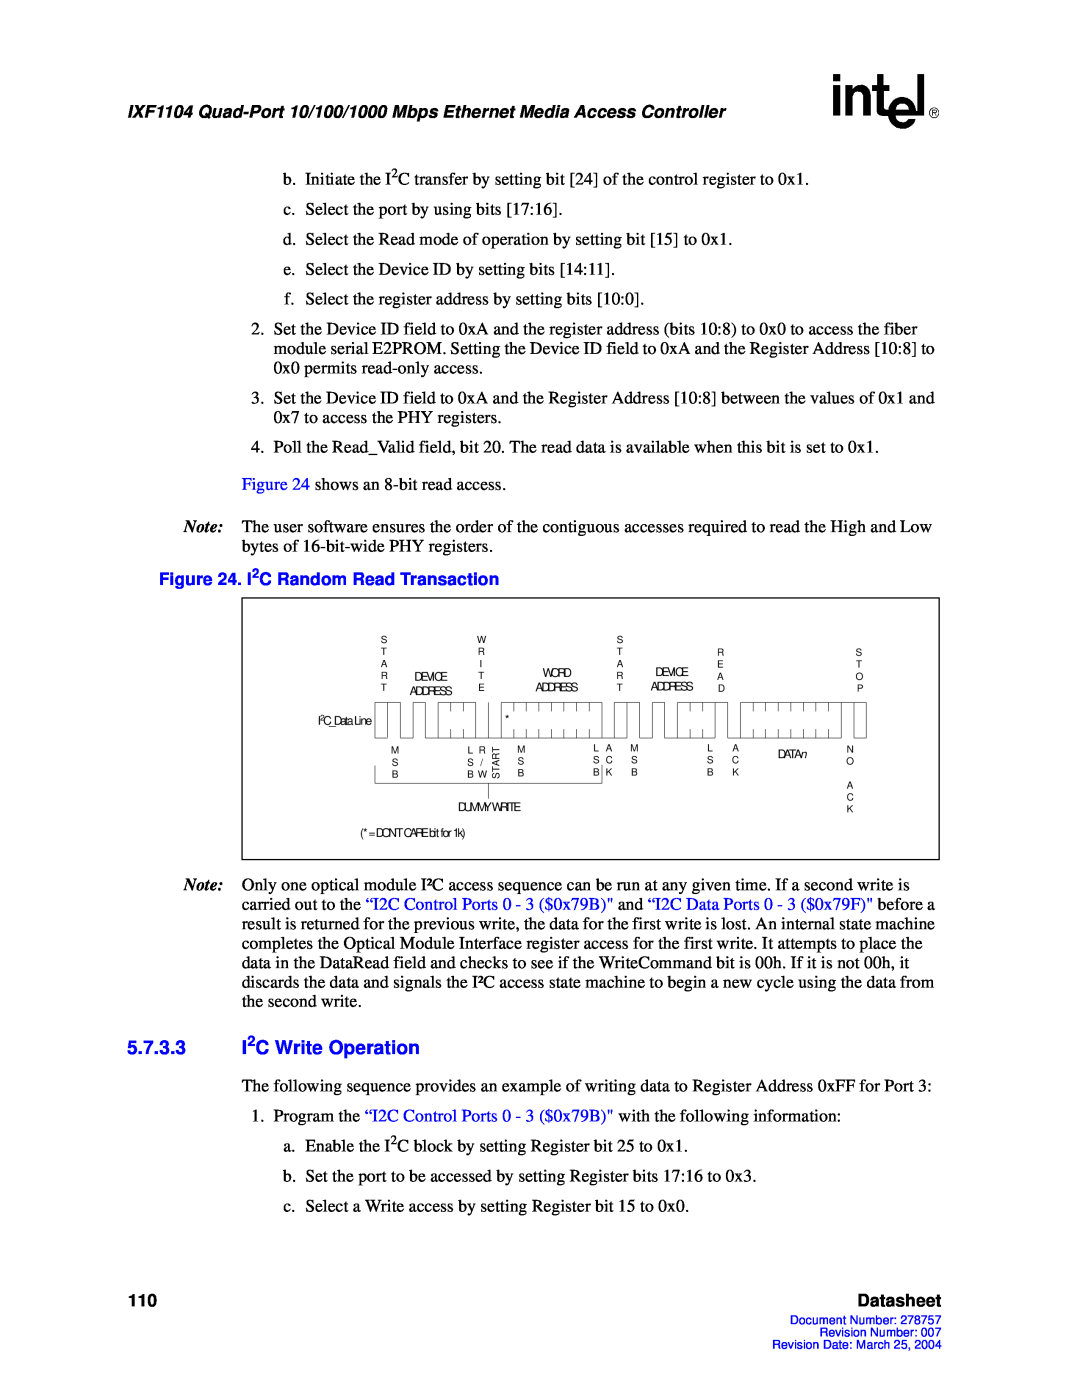 Intel IXF1104 manual 5.7.3.3I2C Write Operation, Datasheet 